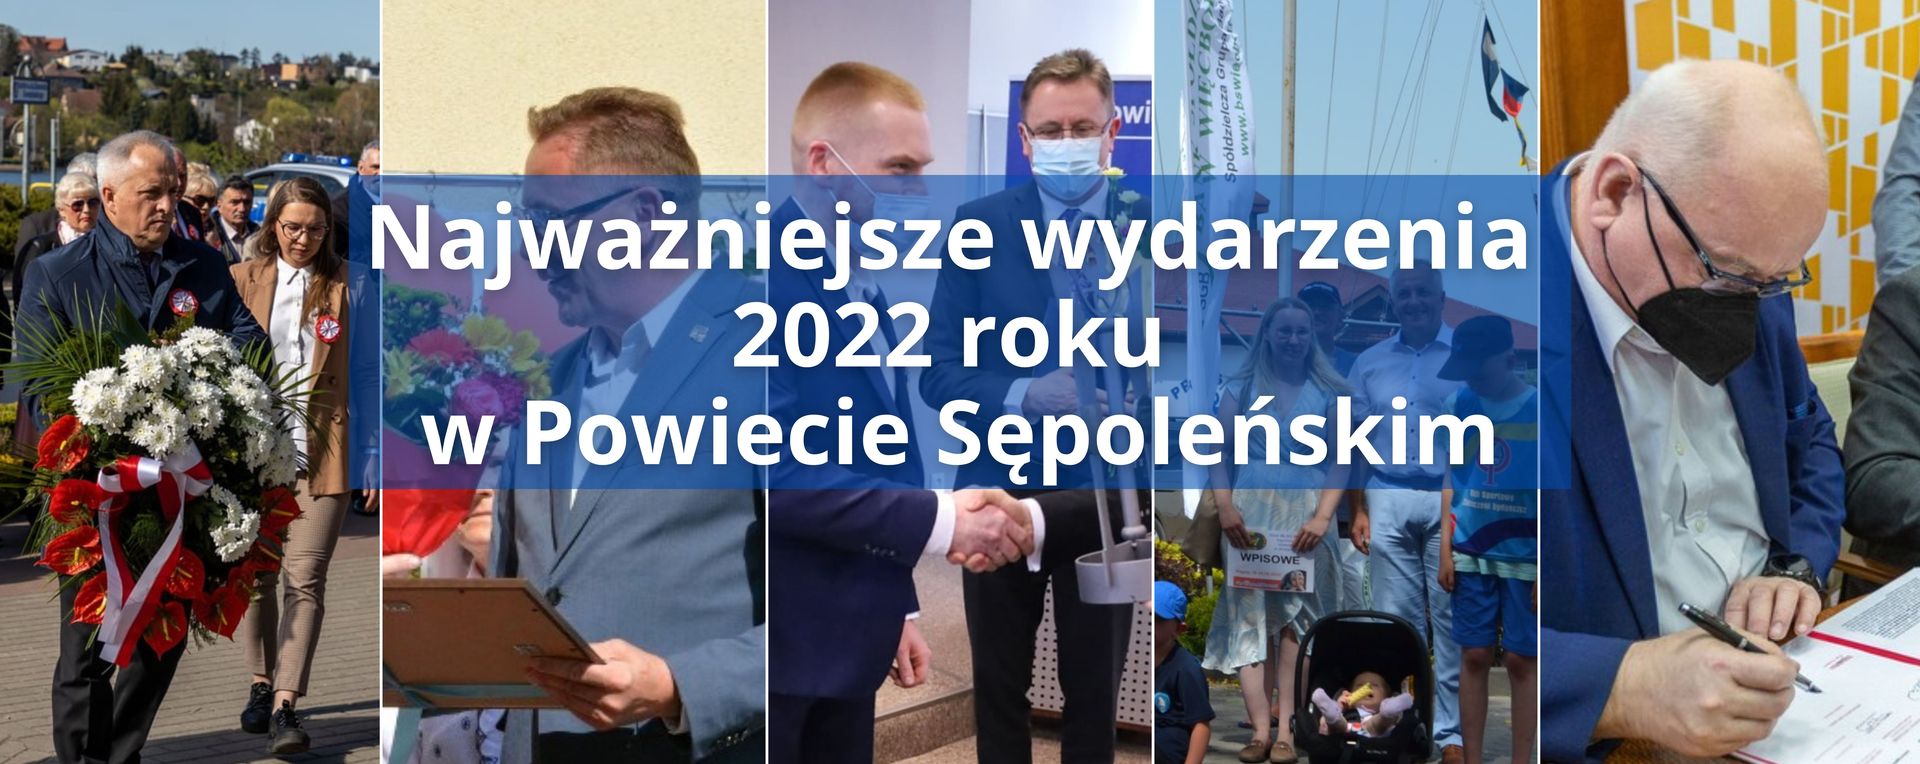 Najważniejsze wydarzenia 2022 roku w Powiecie Sępoleńskim